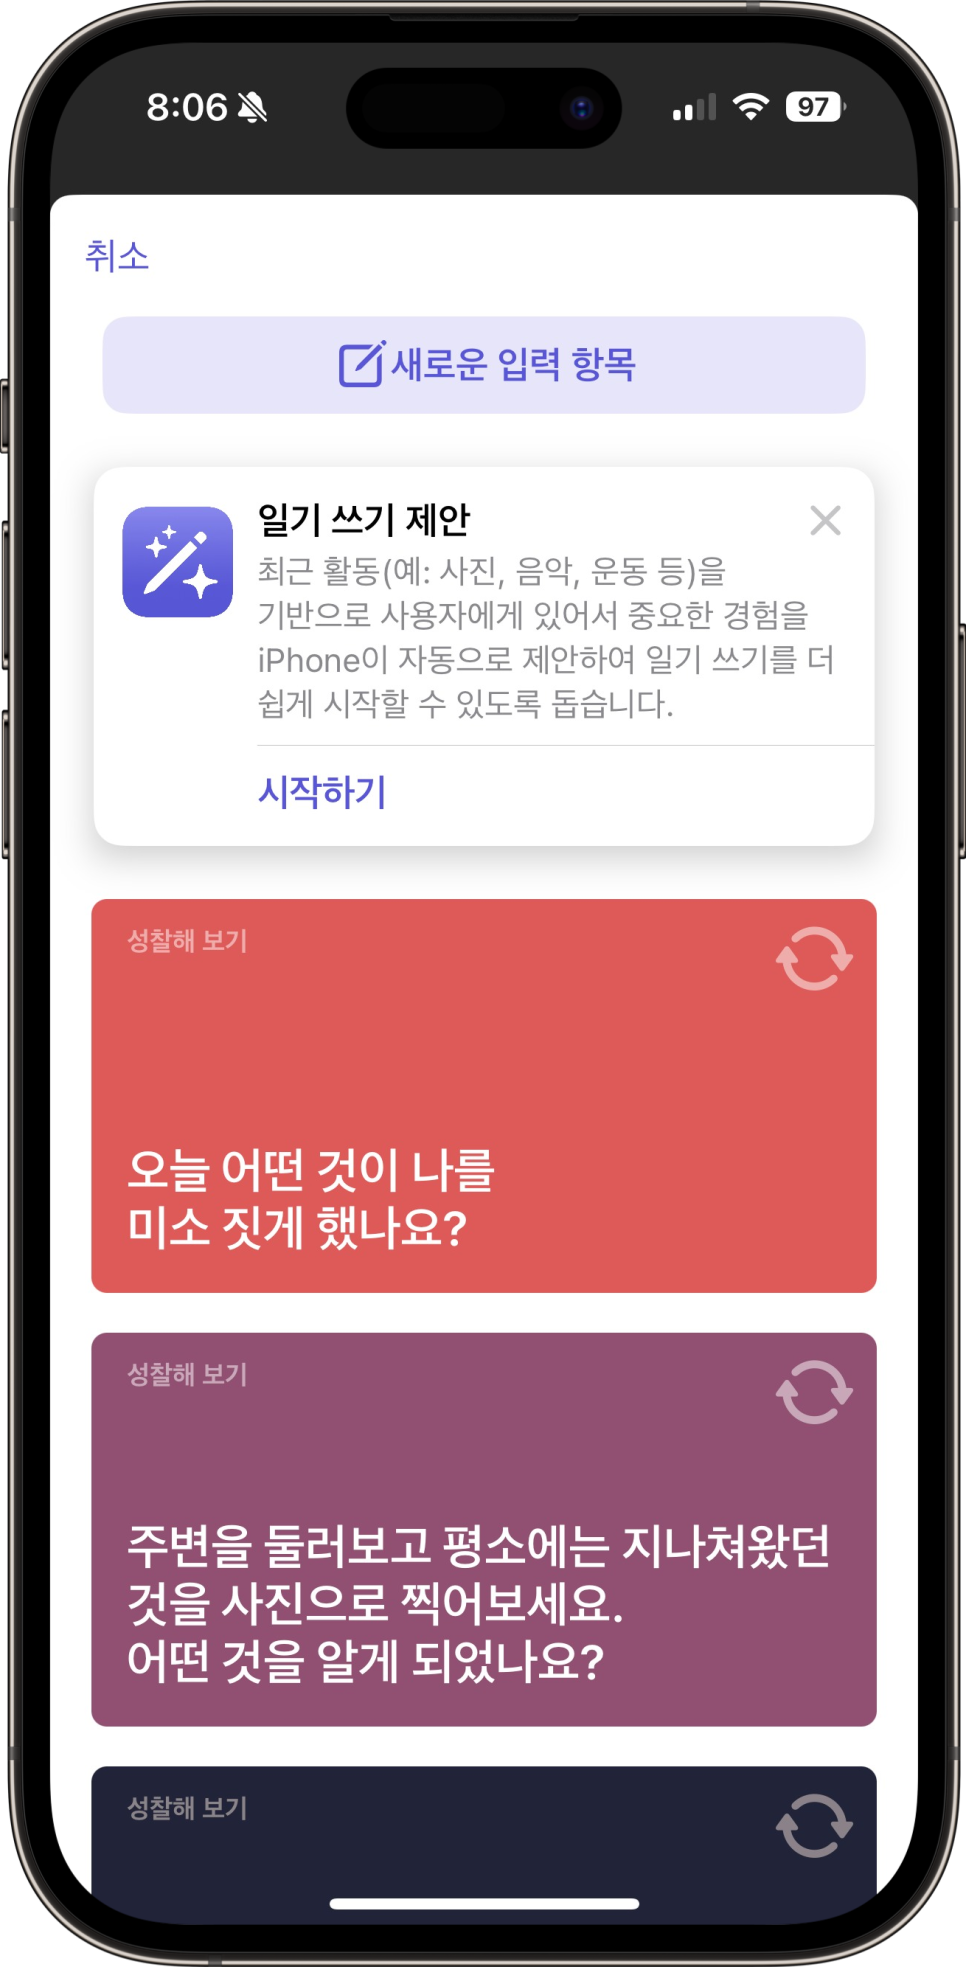 아이폰 ios17.2 소프트웨어 업데이트 일기 앱, 알림음 변경 등 변화